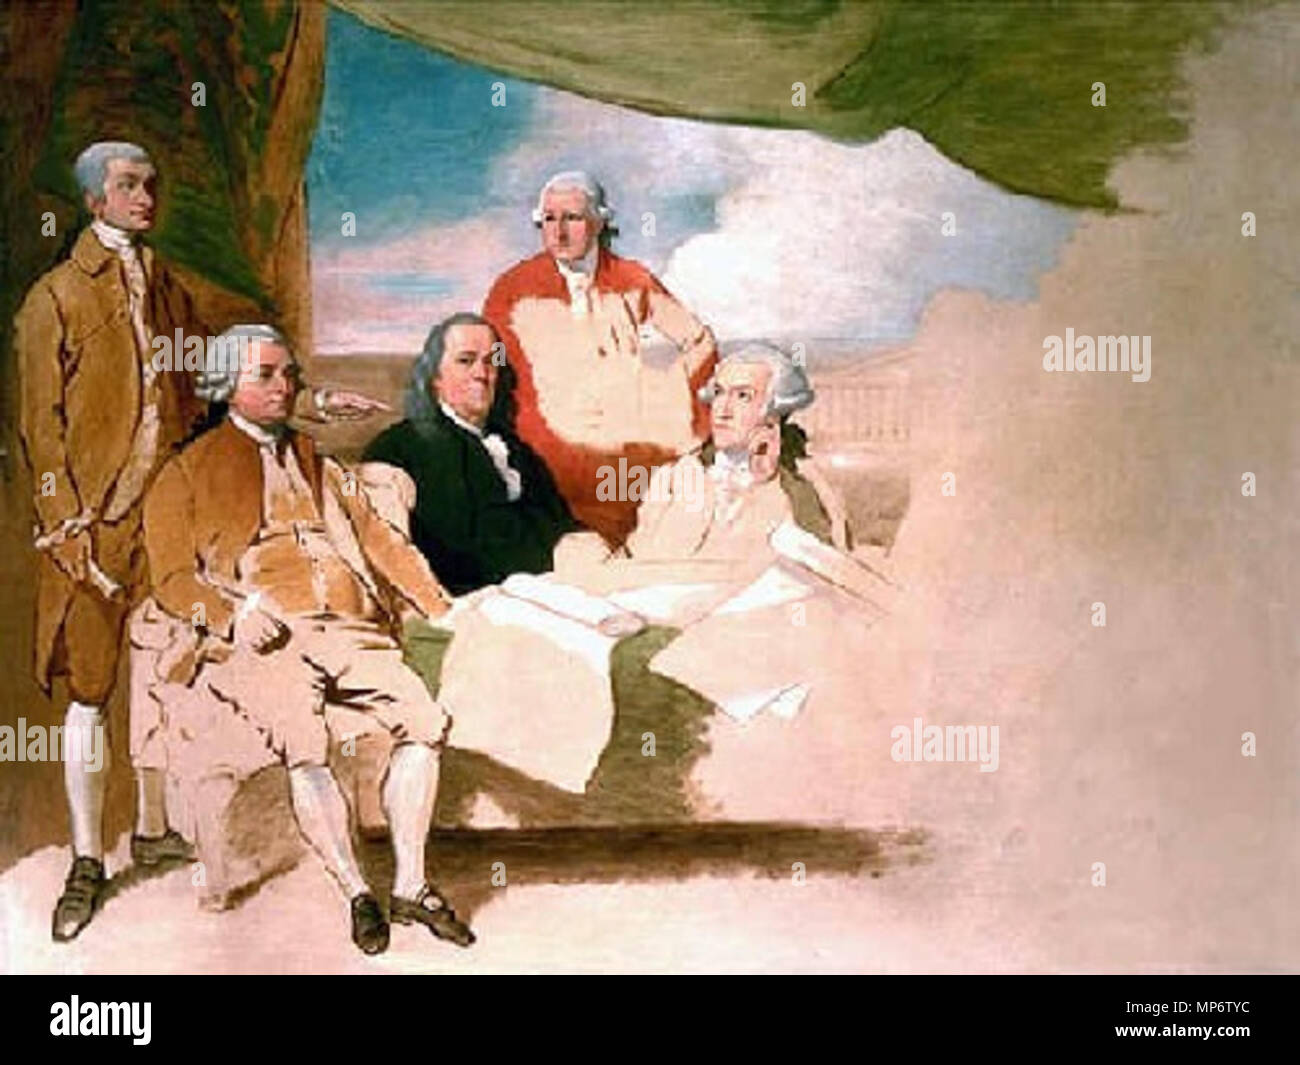 Amerikanischen Kommissaren der Vorläufigen Friedensabkommen mit  Großbritannien (unvollendete Öl Skizze). Benjamin West, amerikanischen  Kommissaren der Vorläufigen Friedensabkommen mit Großbritannien, 1783-1784,  London, England. (Öl auf Leinwand ...